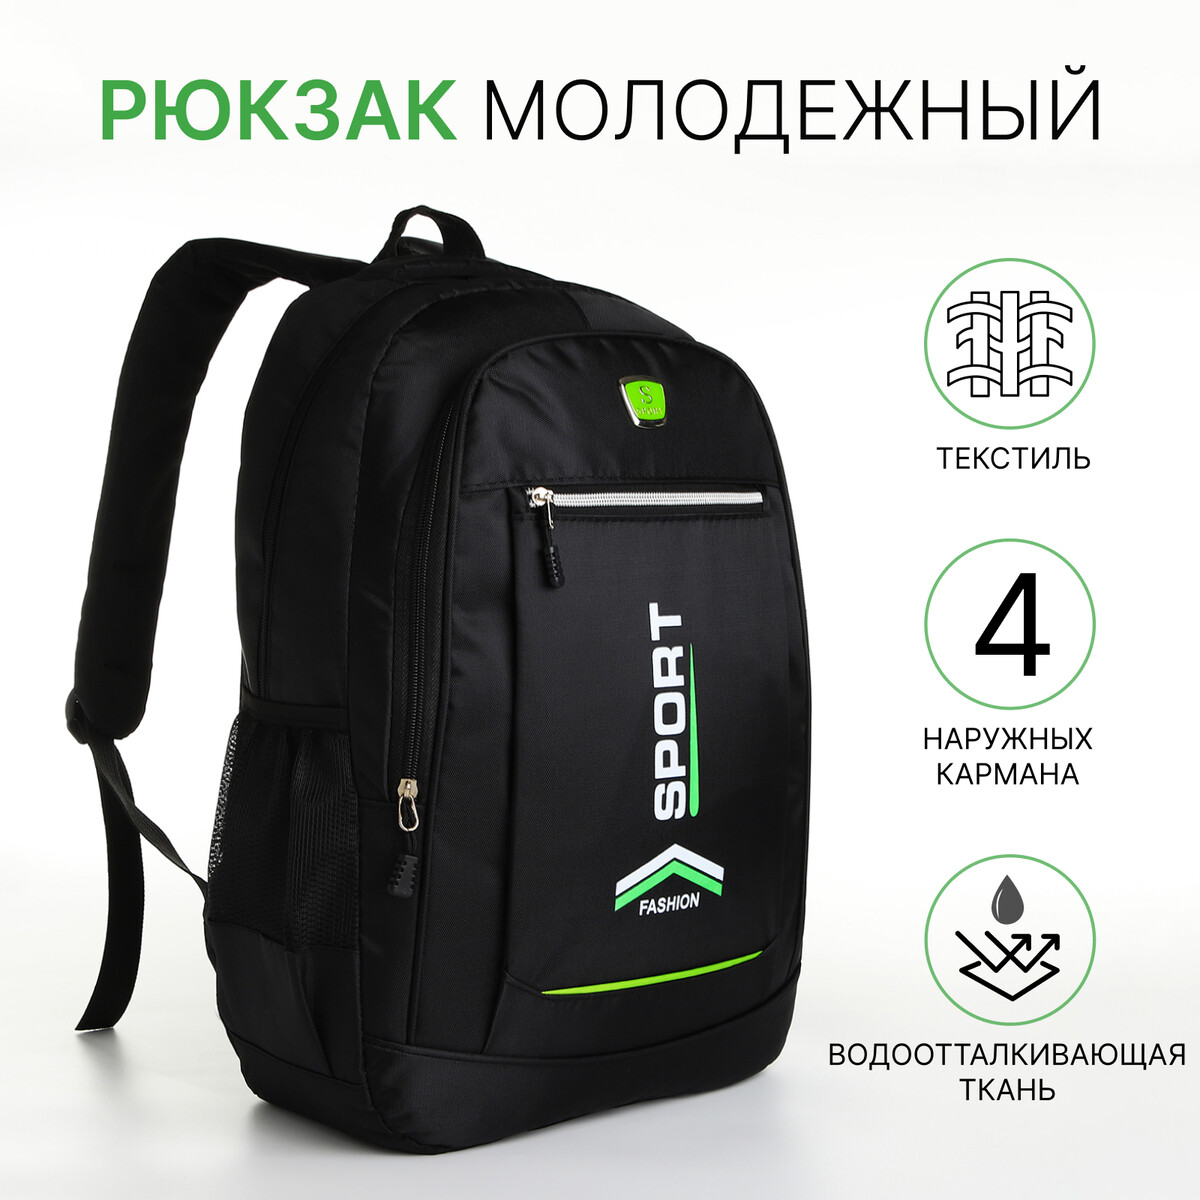 Рюкзак молодежный на молнии, 4 кармана, цвет черный/зеленый рюкзак молодежный из текстиля 2 отдела на молнии 4 кармана зеленый